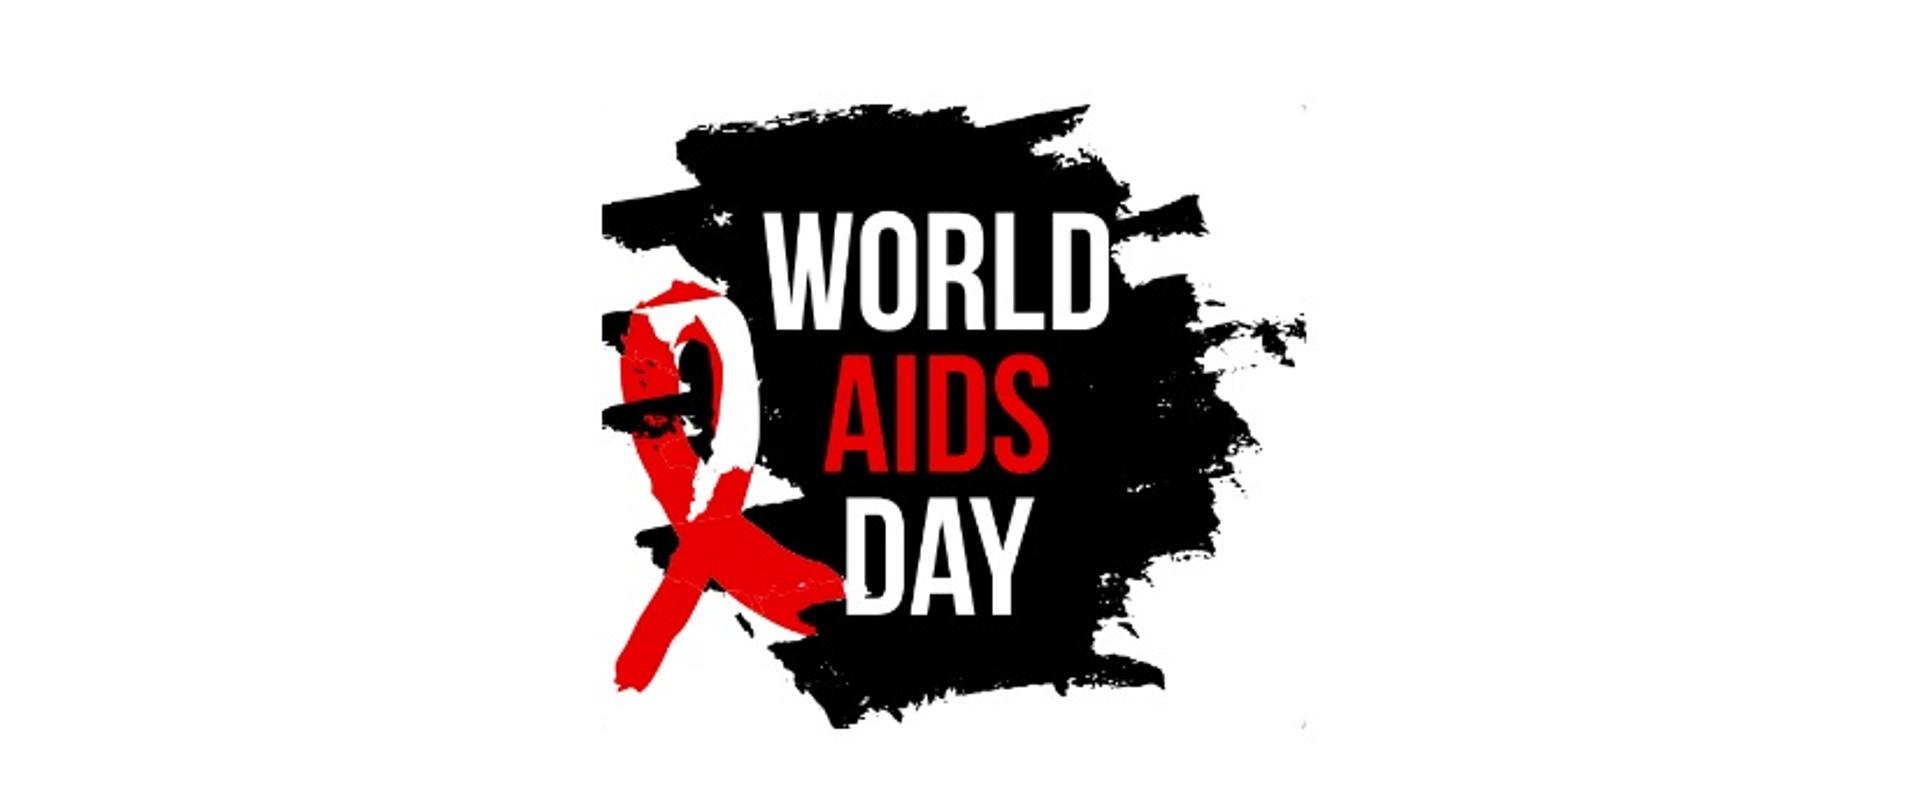 Grafika przedstawia napis "World AIDS day" na czarnym tle oraz symbol - czerwoną wstążeczkę